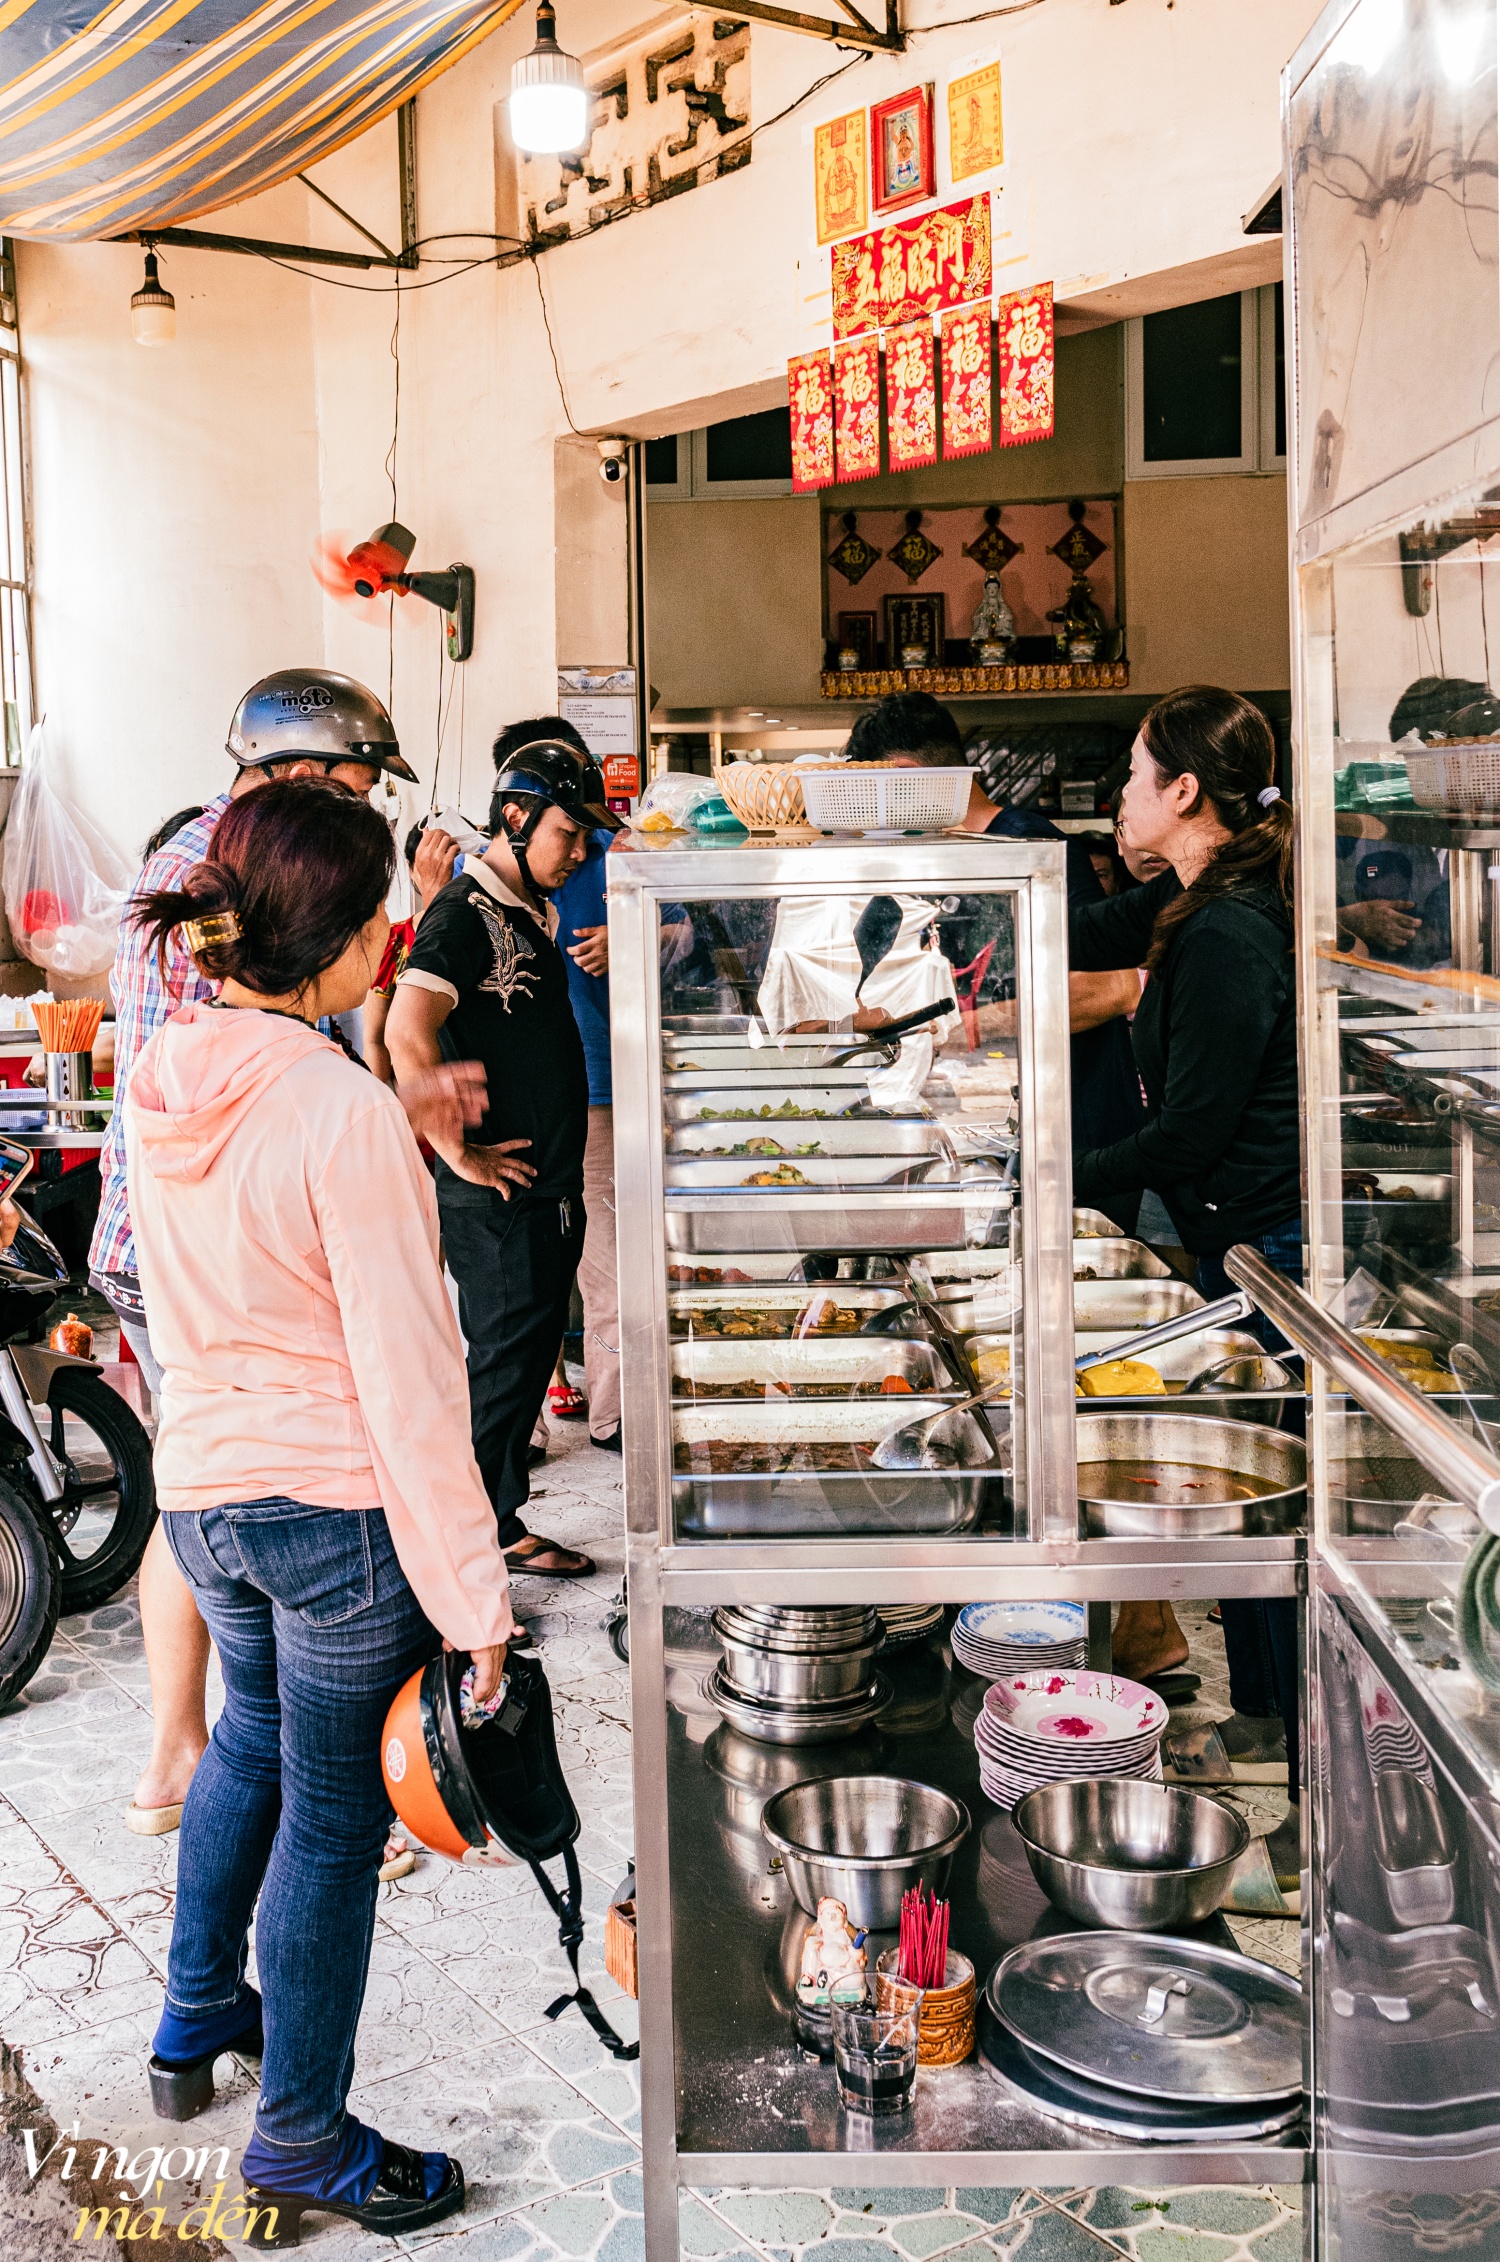 Đi ăn cơm bình dân kiểu người Hoa: Cửa tiệm bán 3 đời mỗi ngày nấu hơn 30 món cầu kỳ, đông khách đến nỗi không dám mở trên ứng dụng giao đồ ăn- Ảnh 20.